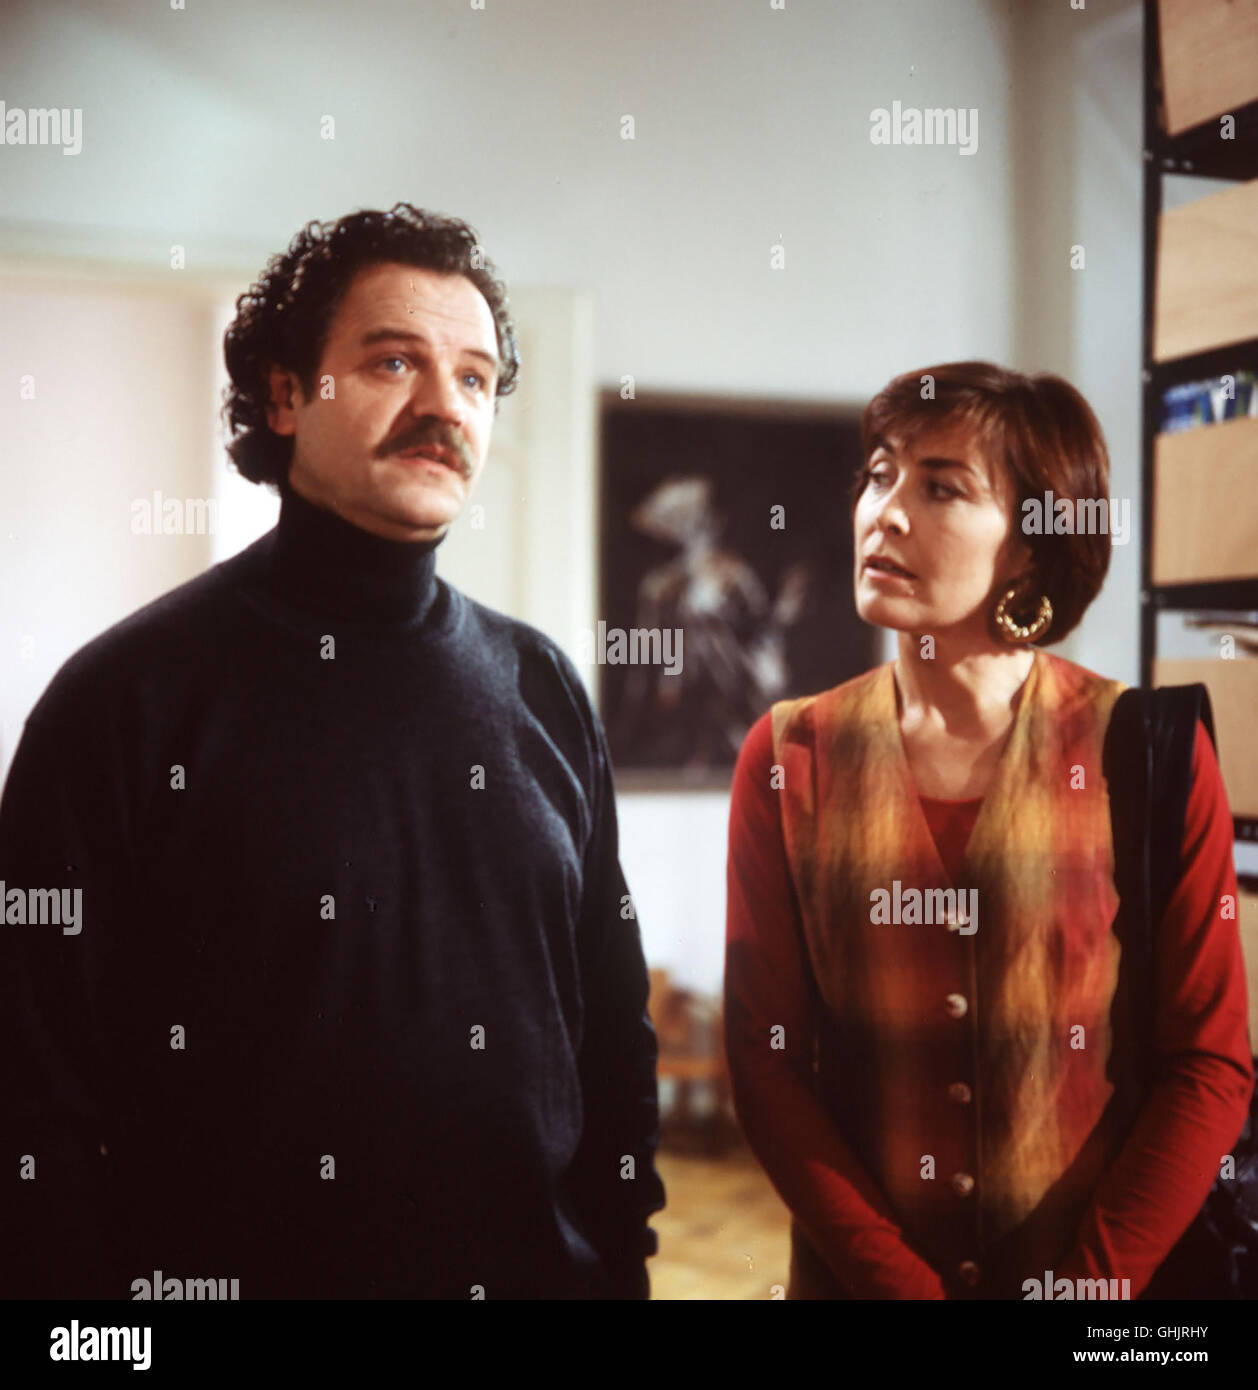 Anna Marx (THEKLA CAROLA WIES) sucht Zuber (GUNTER BERGER) auf, um nach dem verschwundenem mysteriös Bild zu fragen. Regie: Markus Imboden aka. Alte Feindschaft 9 Foto Stock